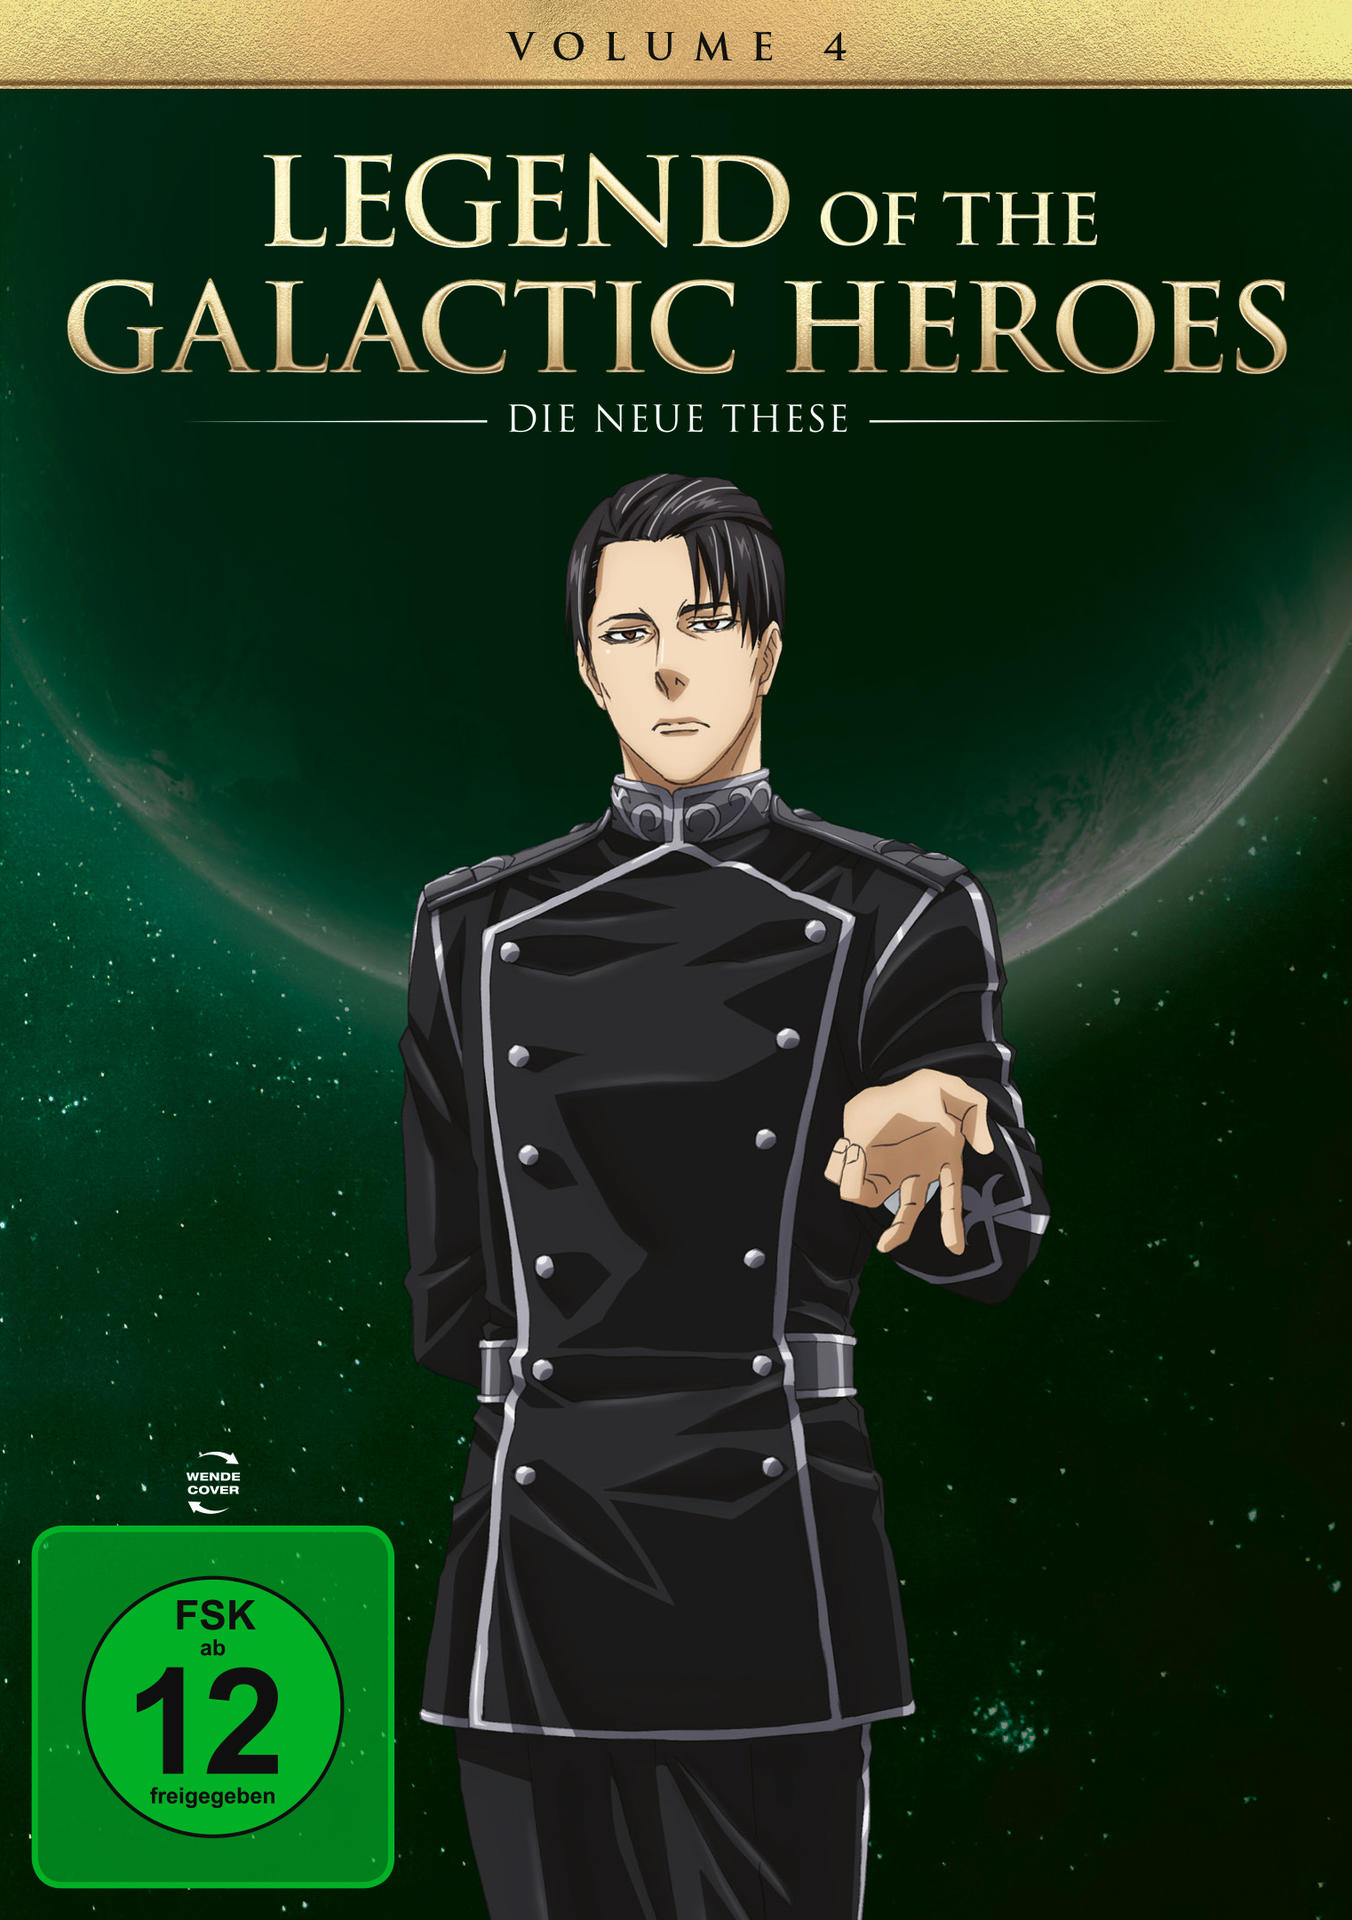 Neue Die 4 Legend of DVD These the Heroes: Galactic Vol.